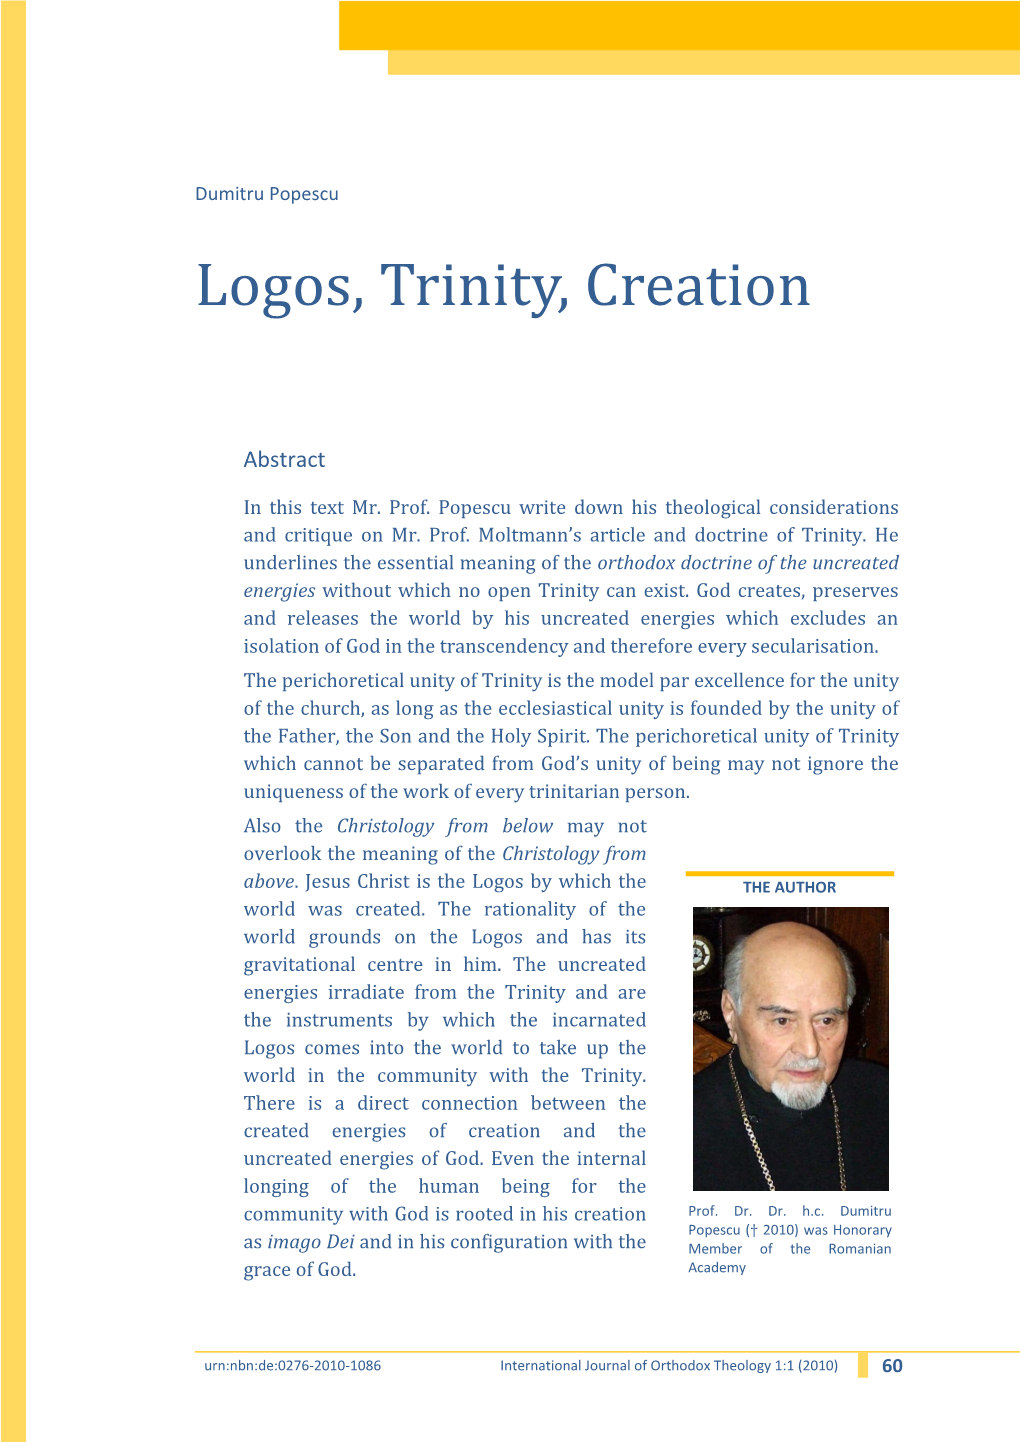 Logos, Trinity, Creation